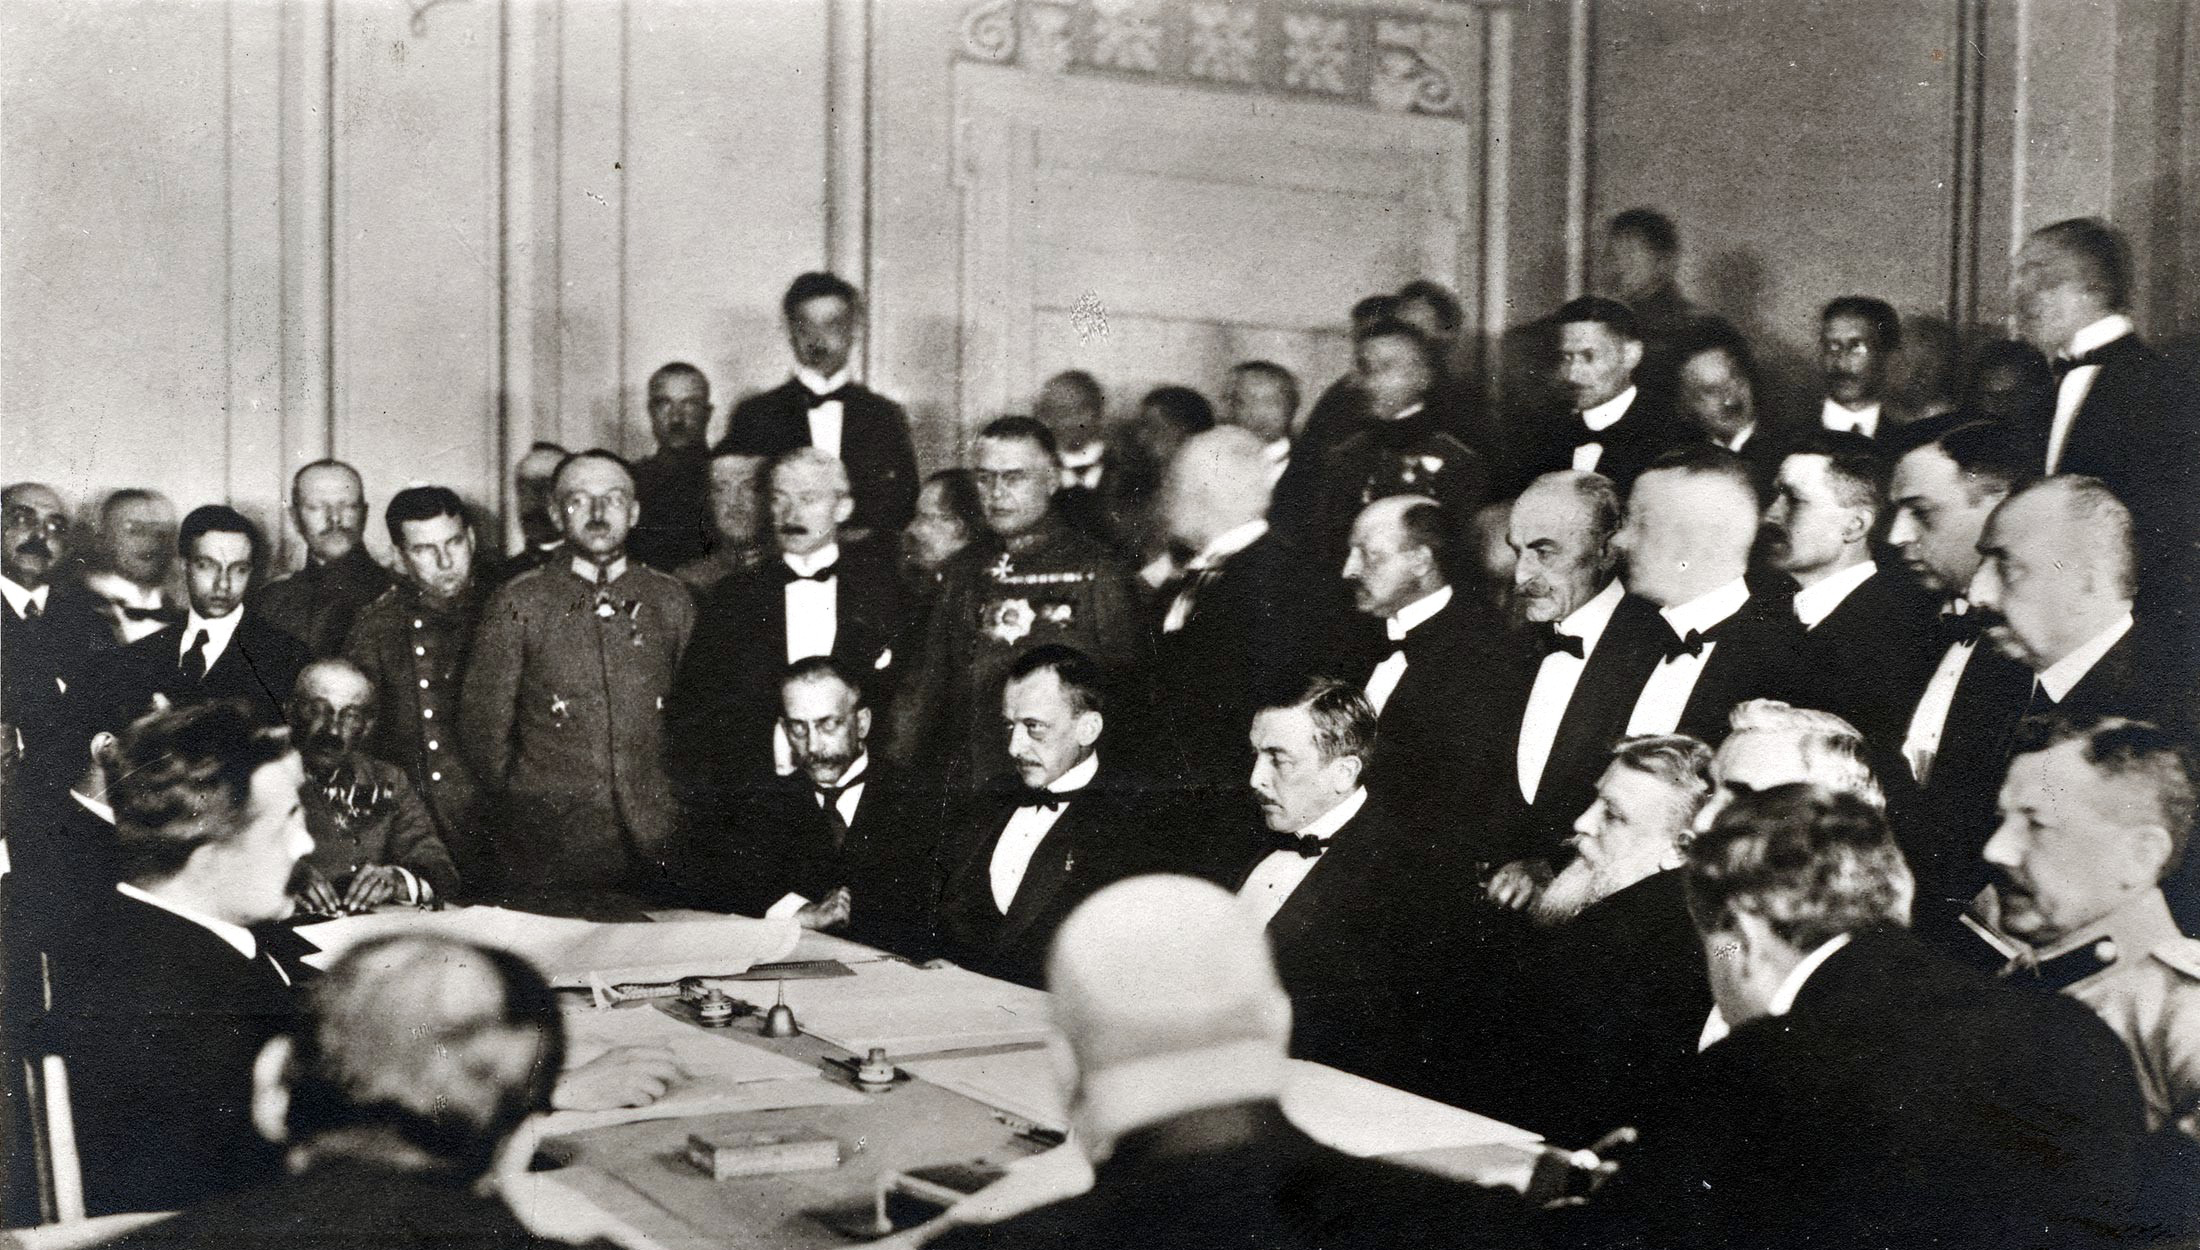 Tratado de Brest-Litovsk